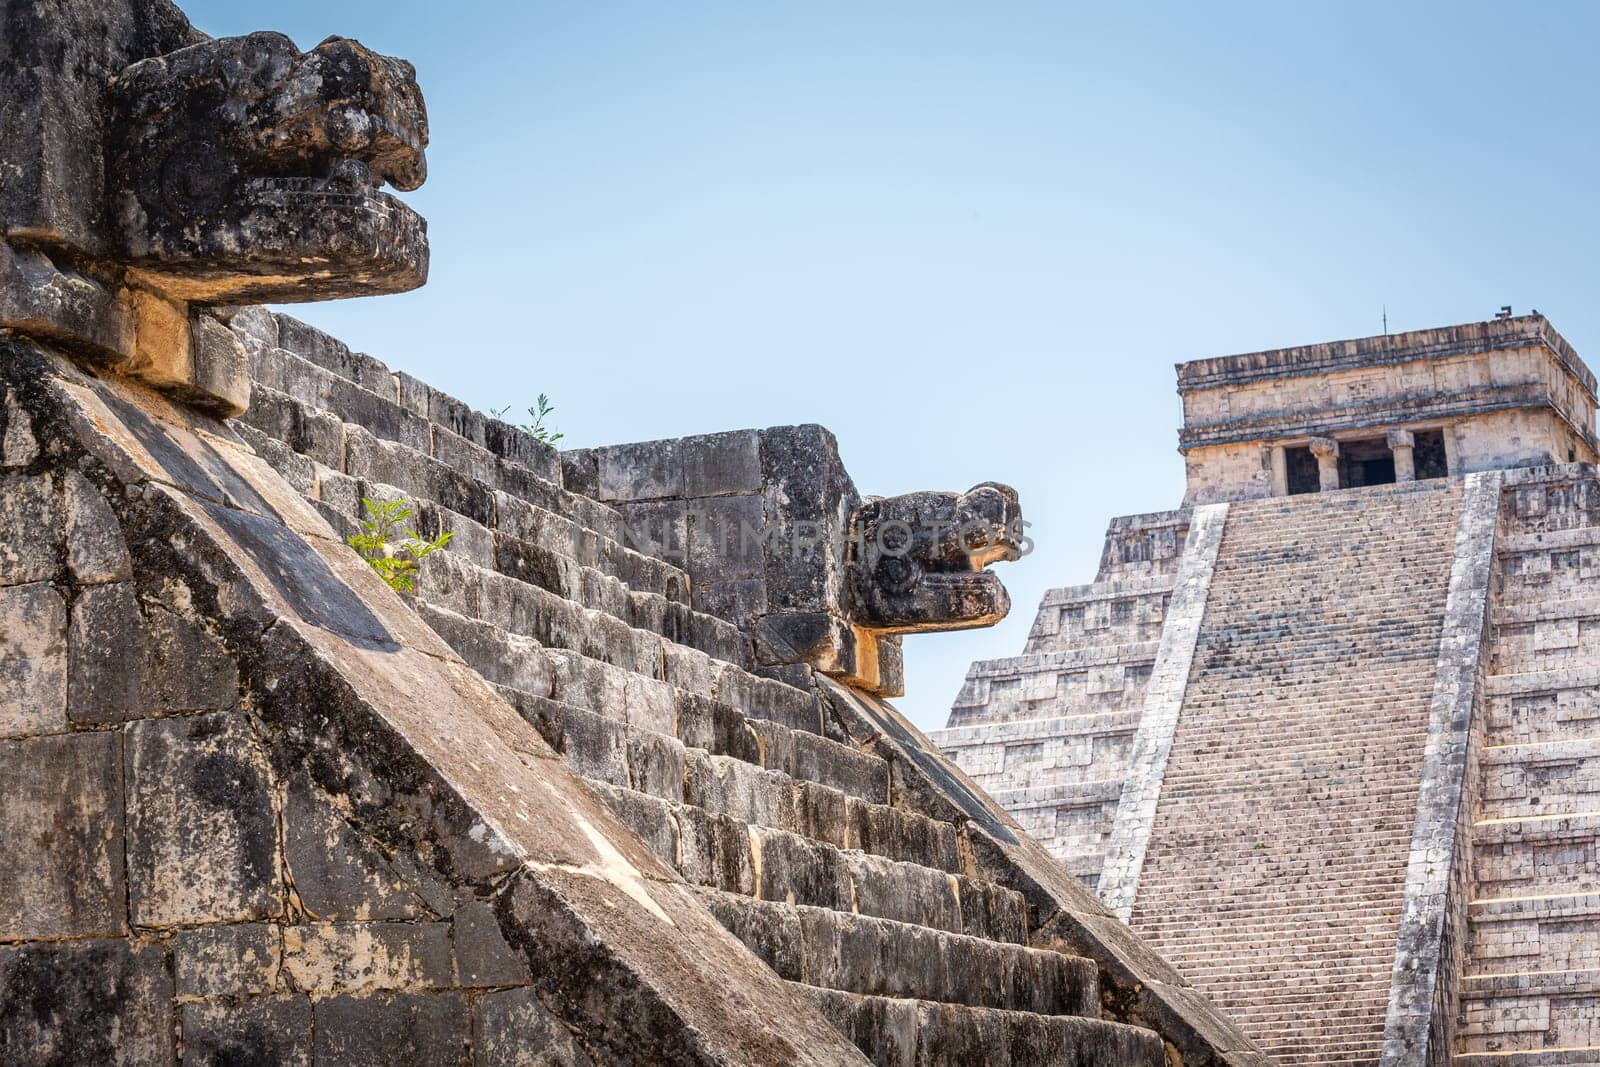 Mayan ancient Chichen Itza Pyramid and Platform at sunrise, Yucatan, Mexico